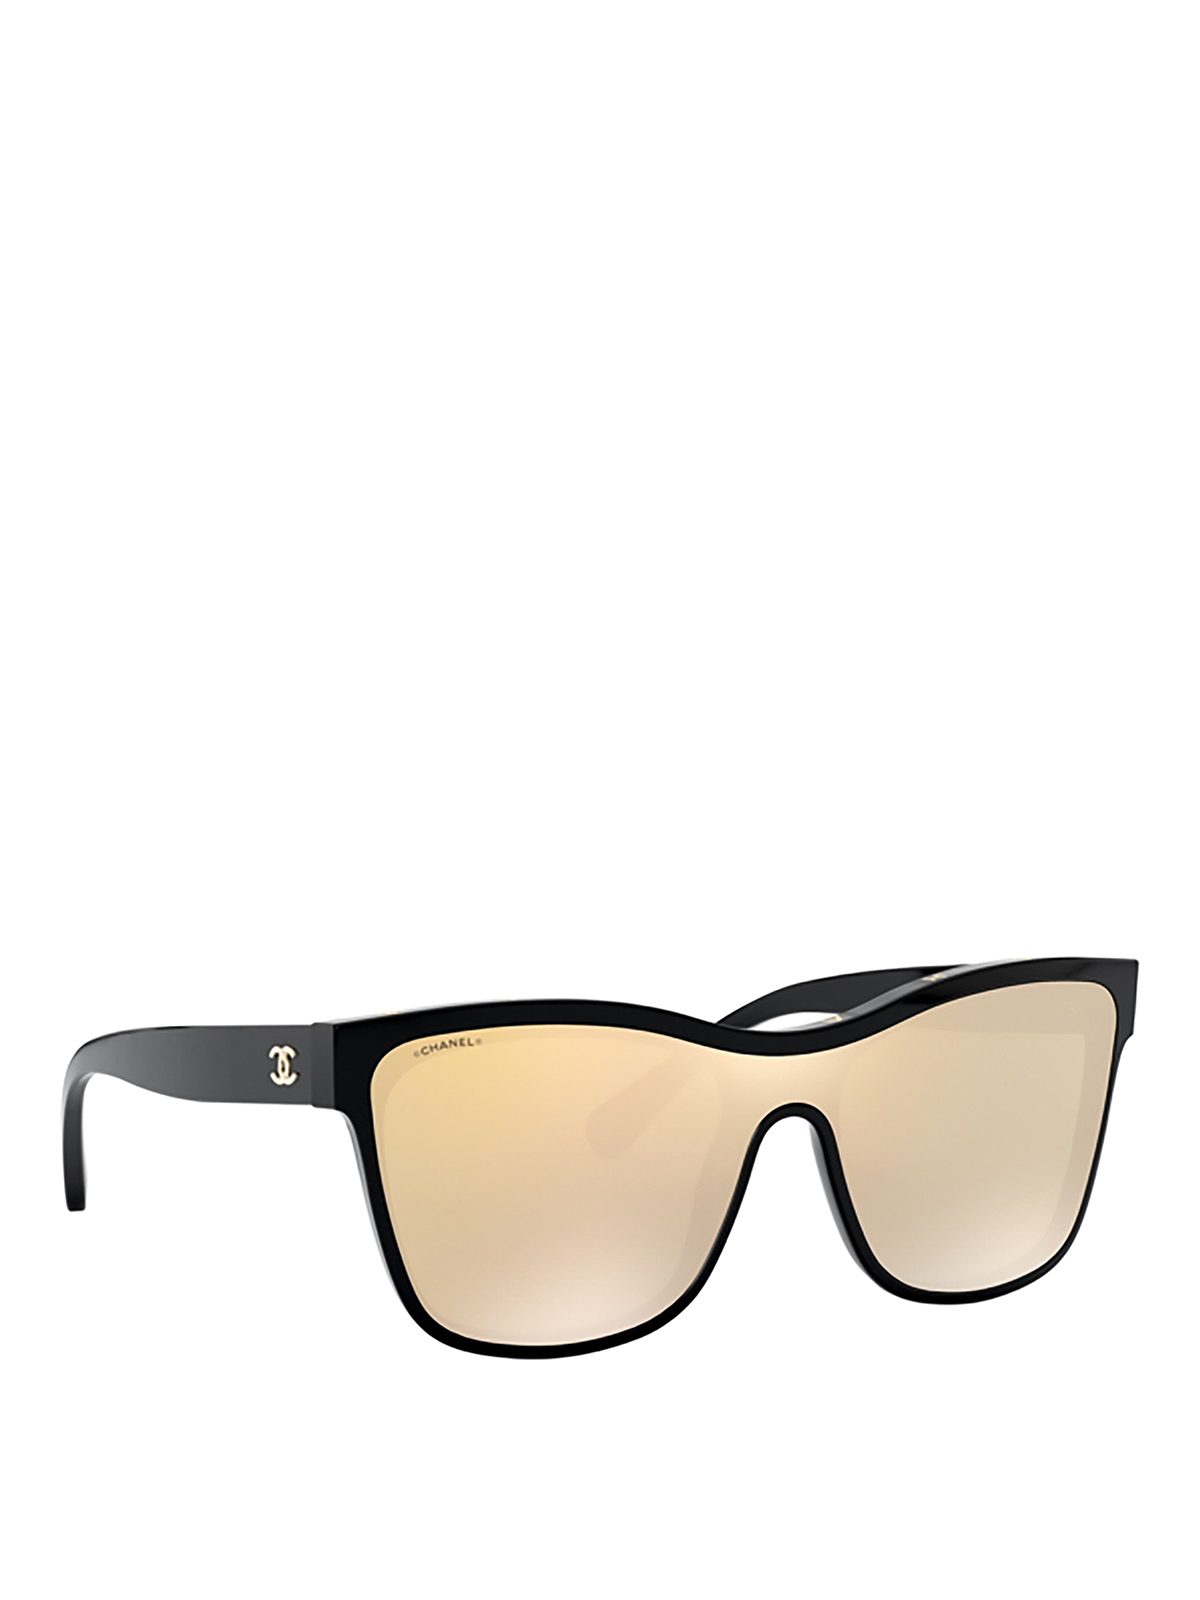 Chanel Rose Gold Mirror Summer Pilot Sunglasses 4223 Yoogis Closet   xn90absbknhbvgexnp1ai443